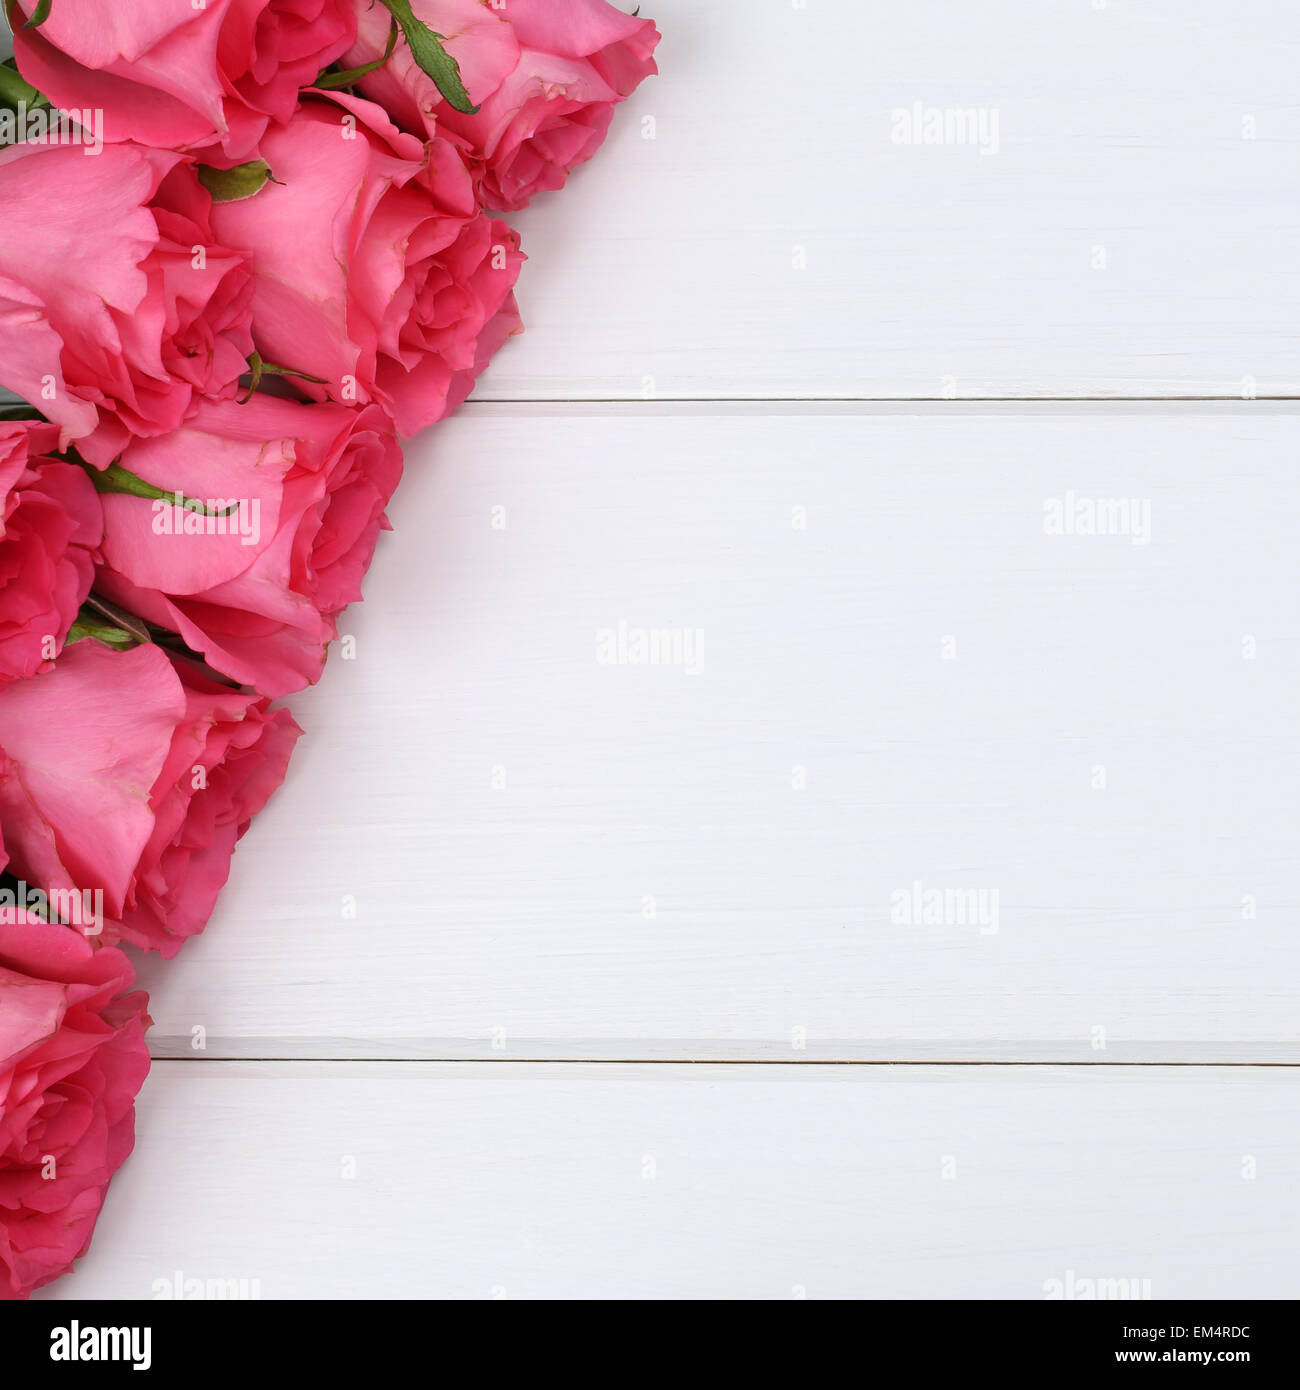 Desear flores fotografías e imágenes de alta resolución - Página 5 - Alamy